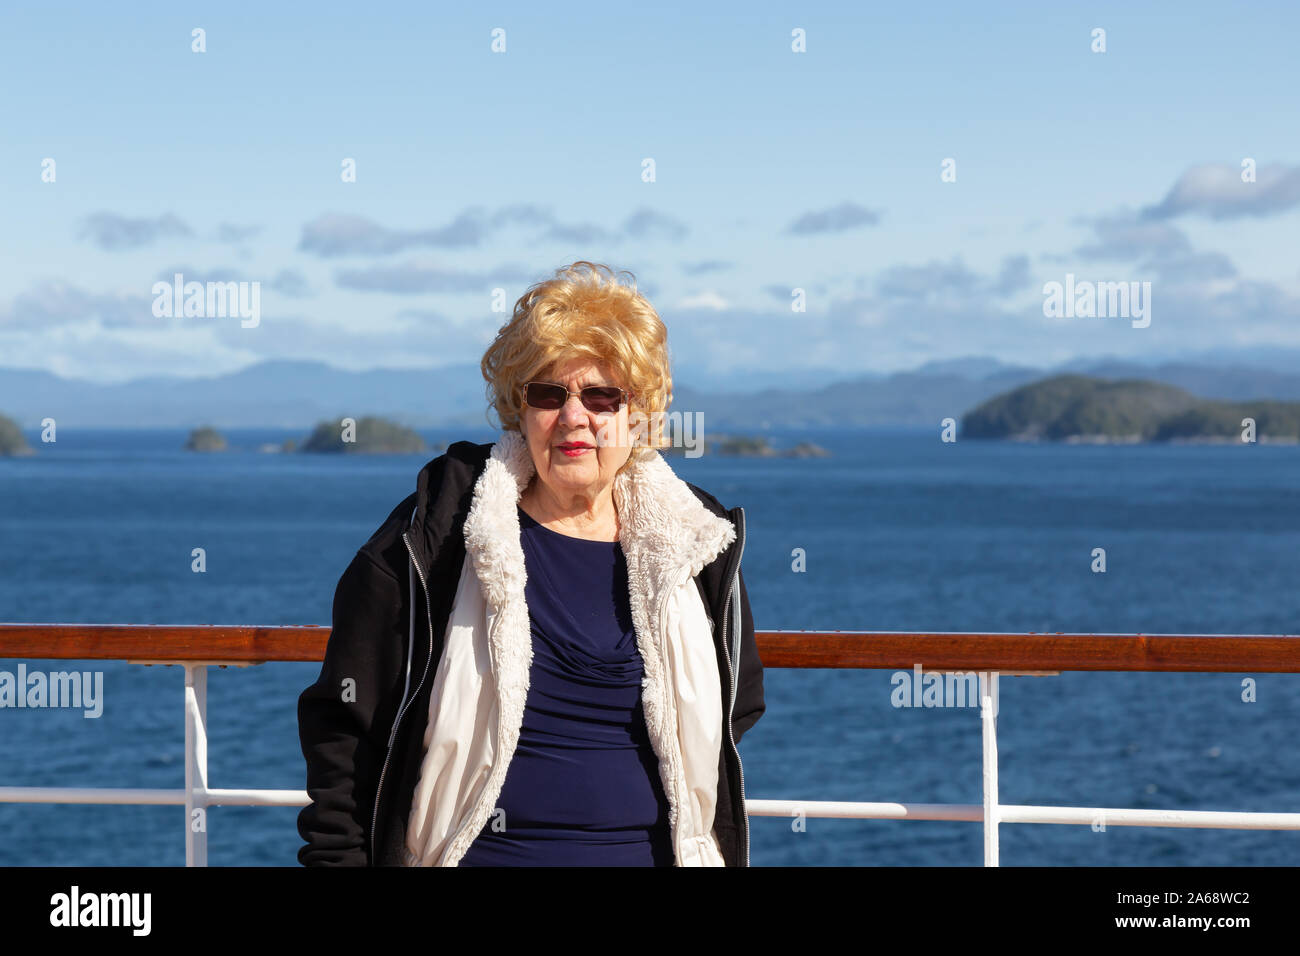 L'île de Vancouver, Colombie-Britannique, Canada - le 27 septembre 2019 : sur un bateau de croisière pendant une journée ensoleillée. Banque D'Images